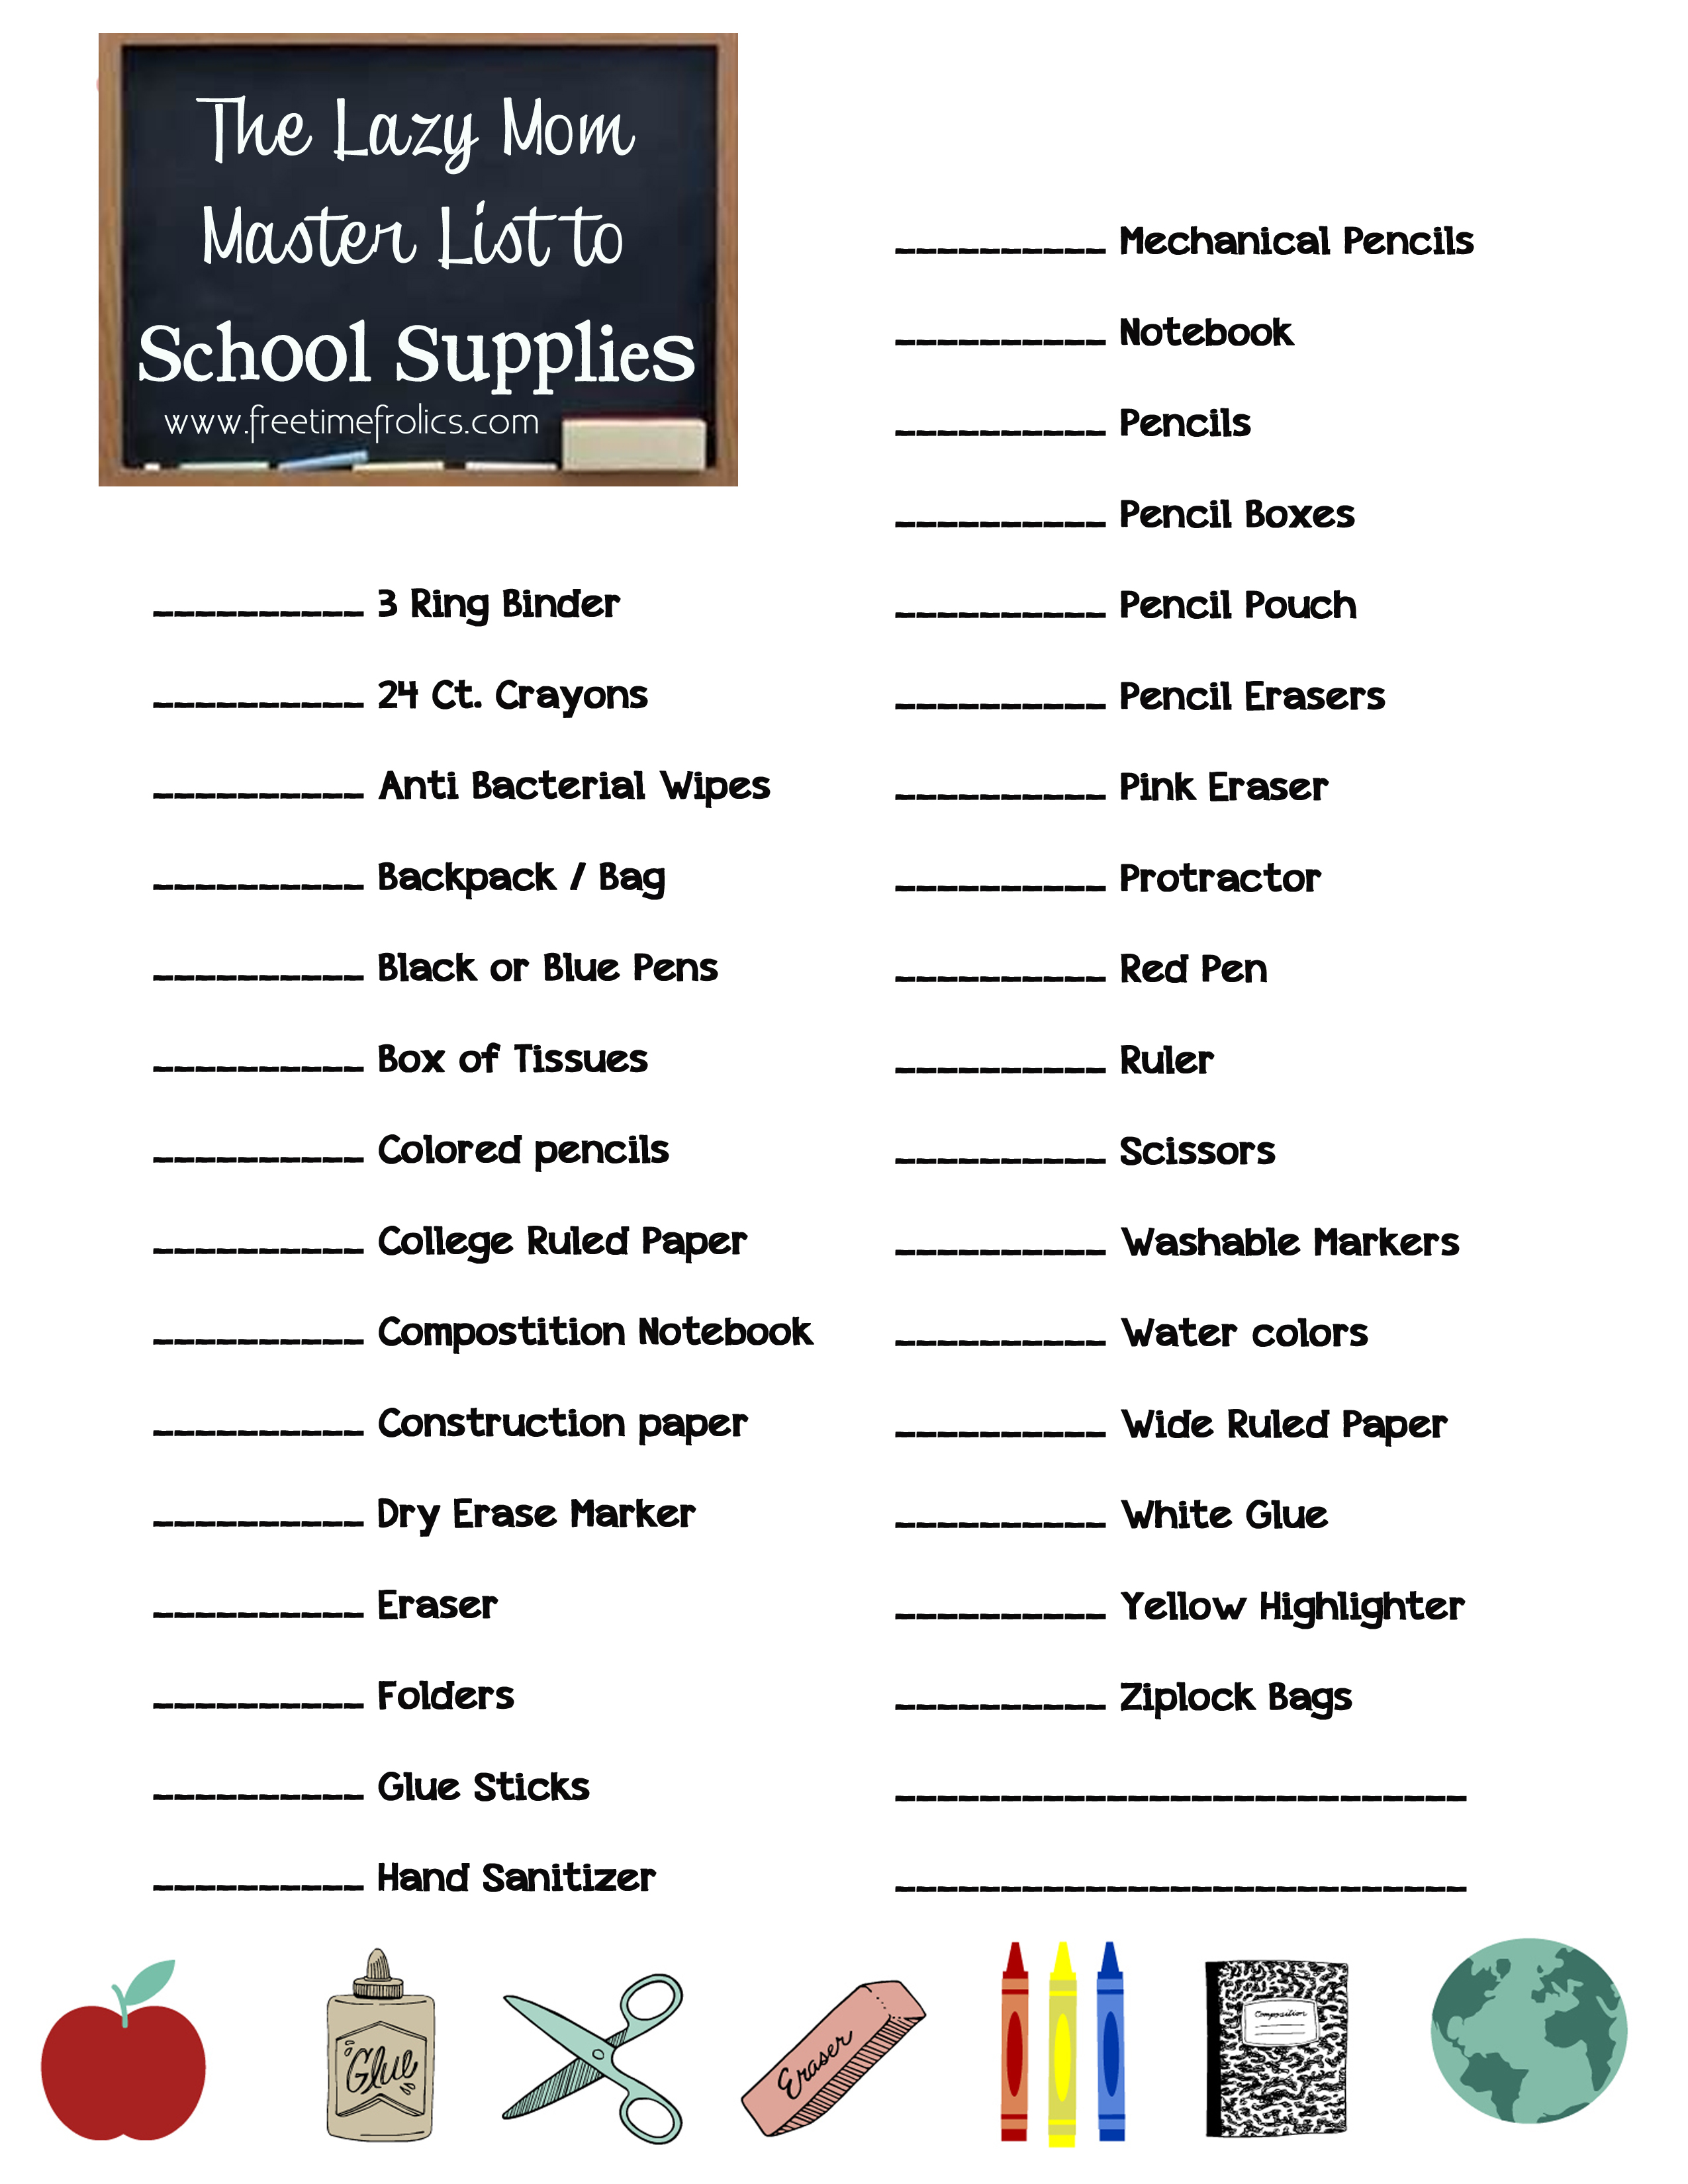 School Supplies printable checklist